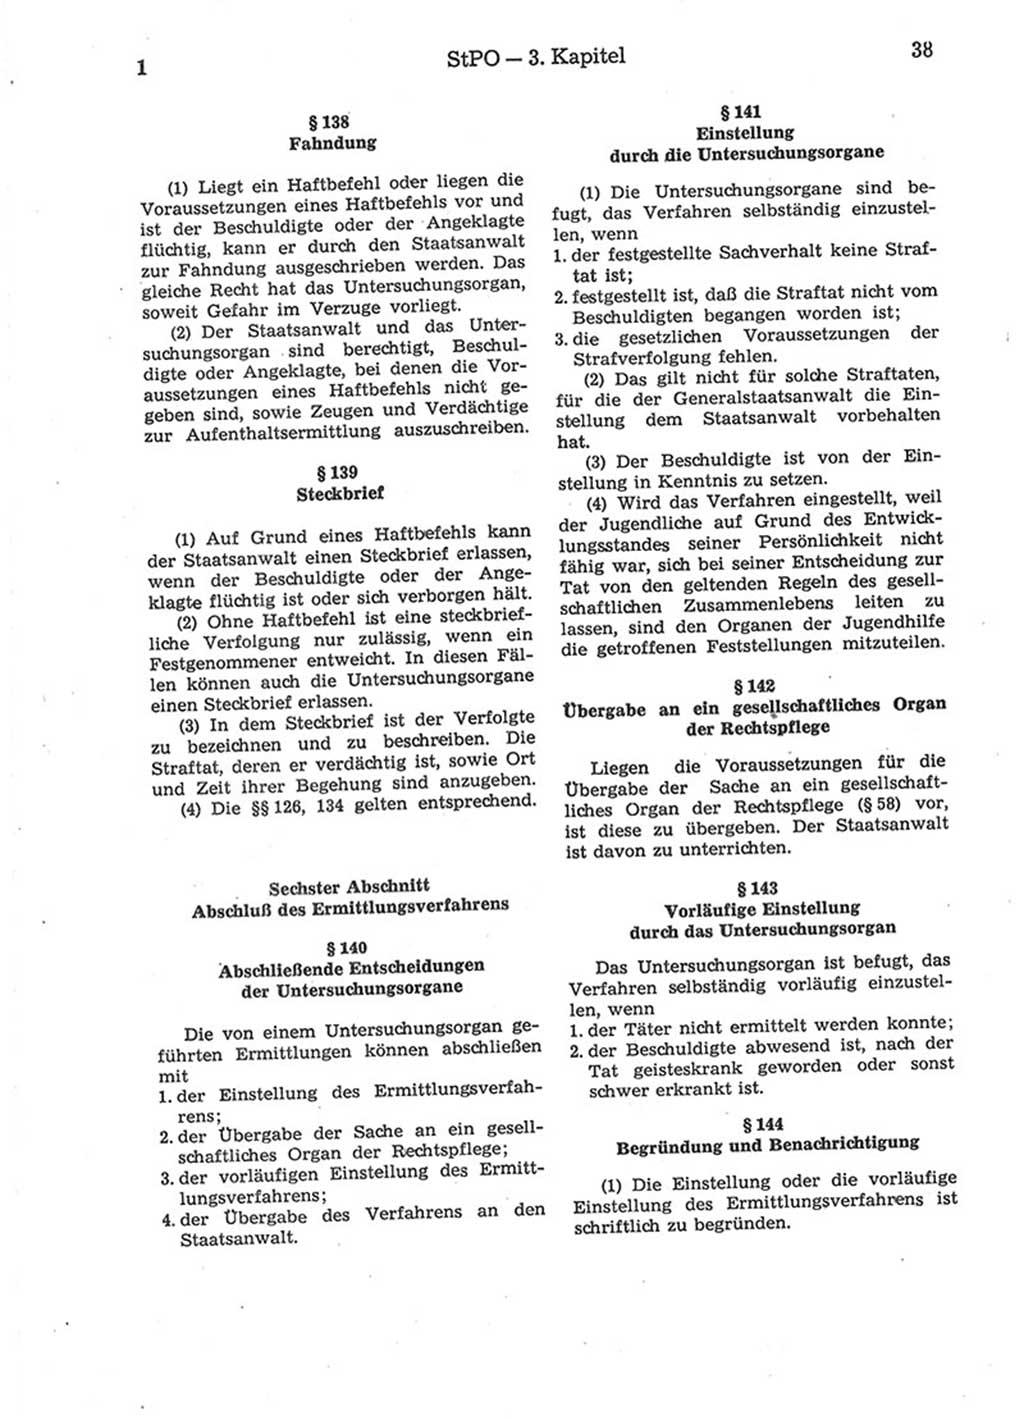 Strafprozeßordnung (StPO) der Deutschen Demokratischen Republik (DDR) 1975, Seite 38 (StPO DDR 1974, S. 38)